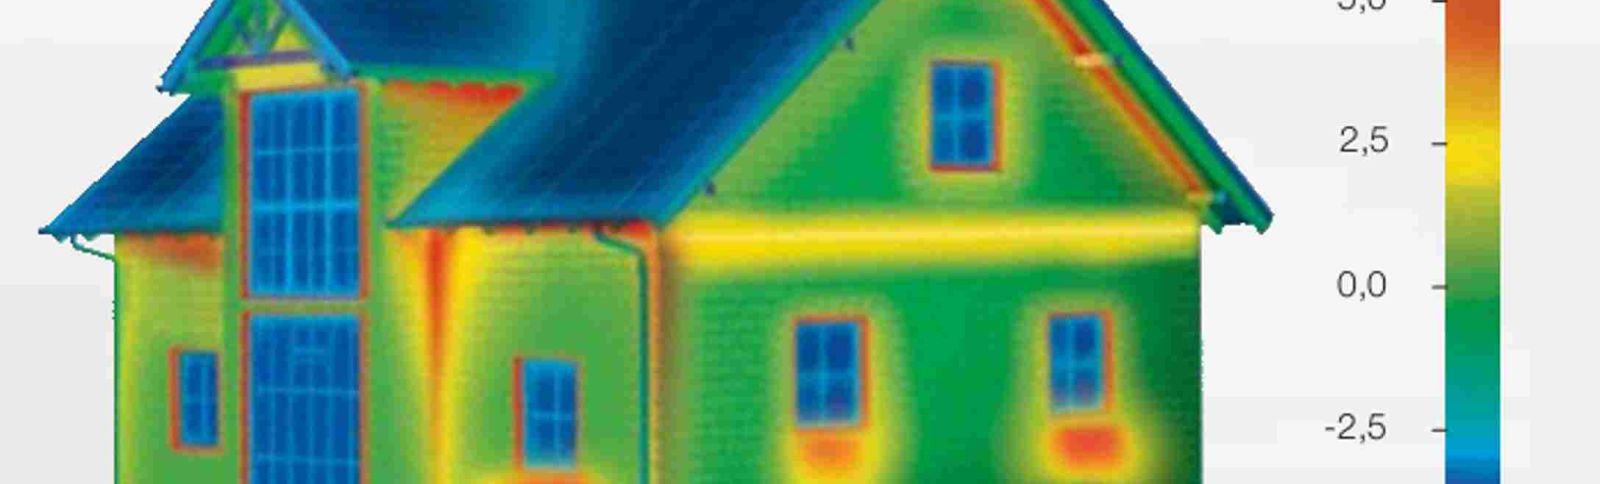 Indagine termografica applicata agli edifici